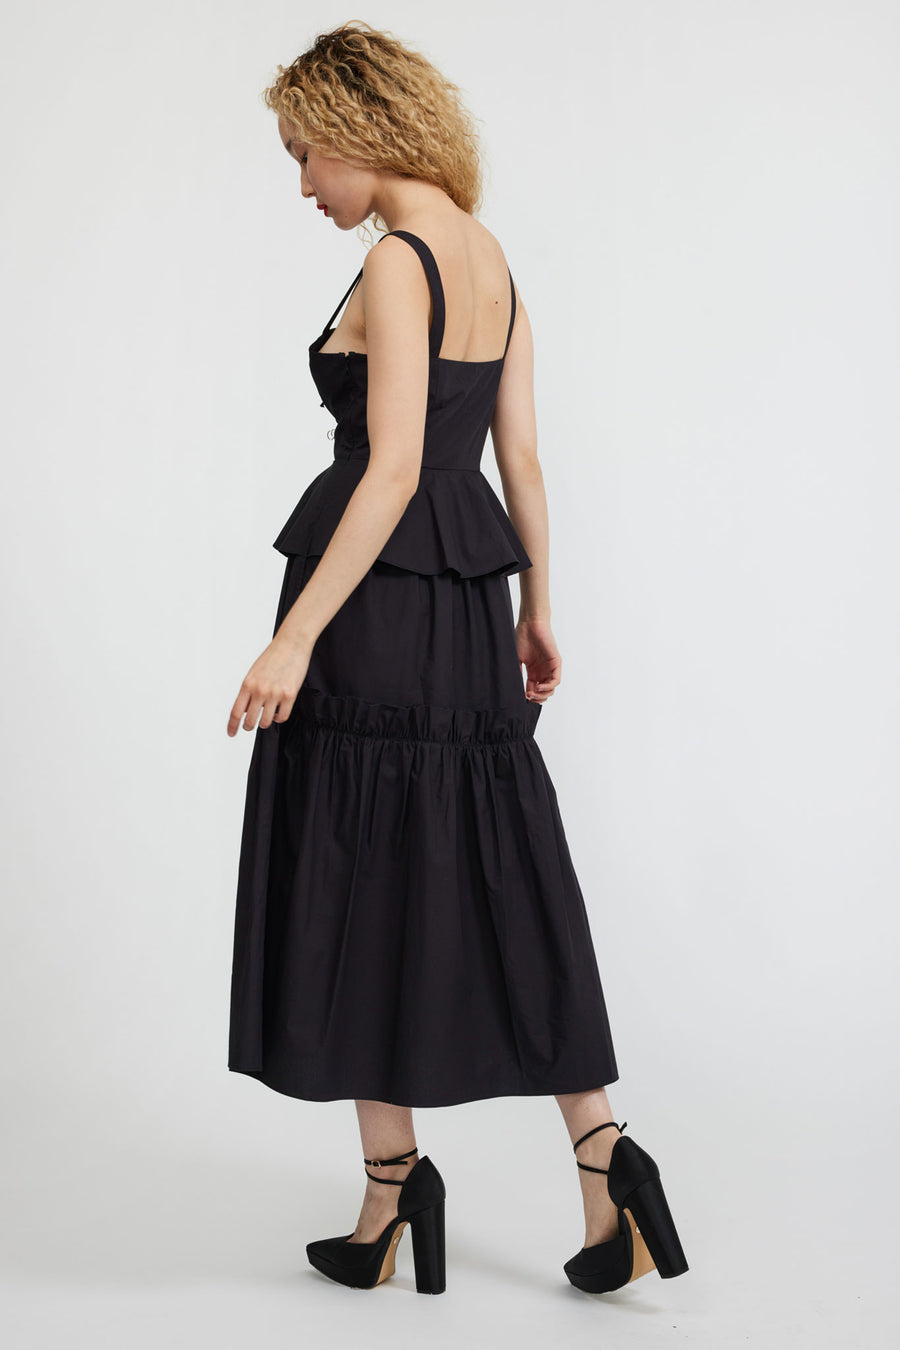 BATSHEVA - Quinn Dress in Black